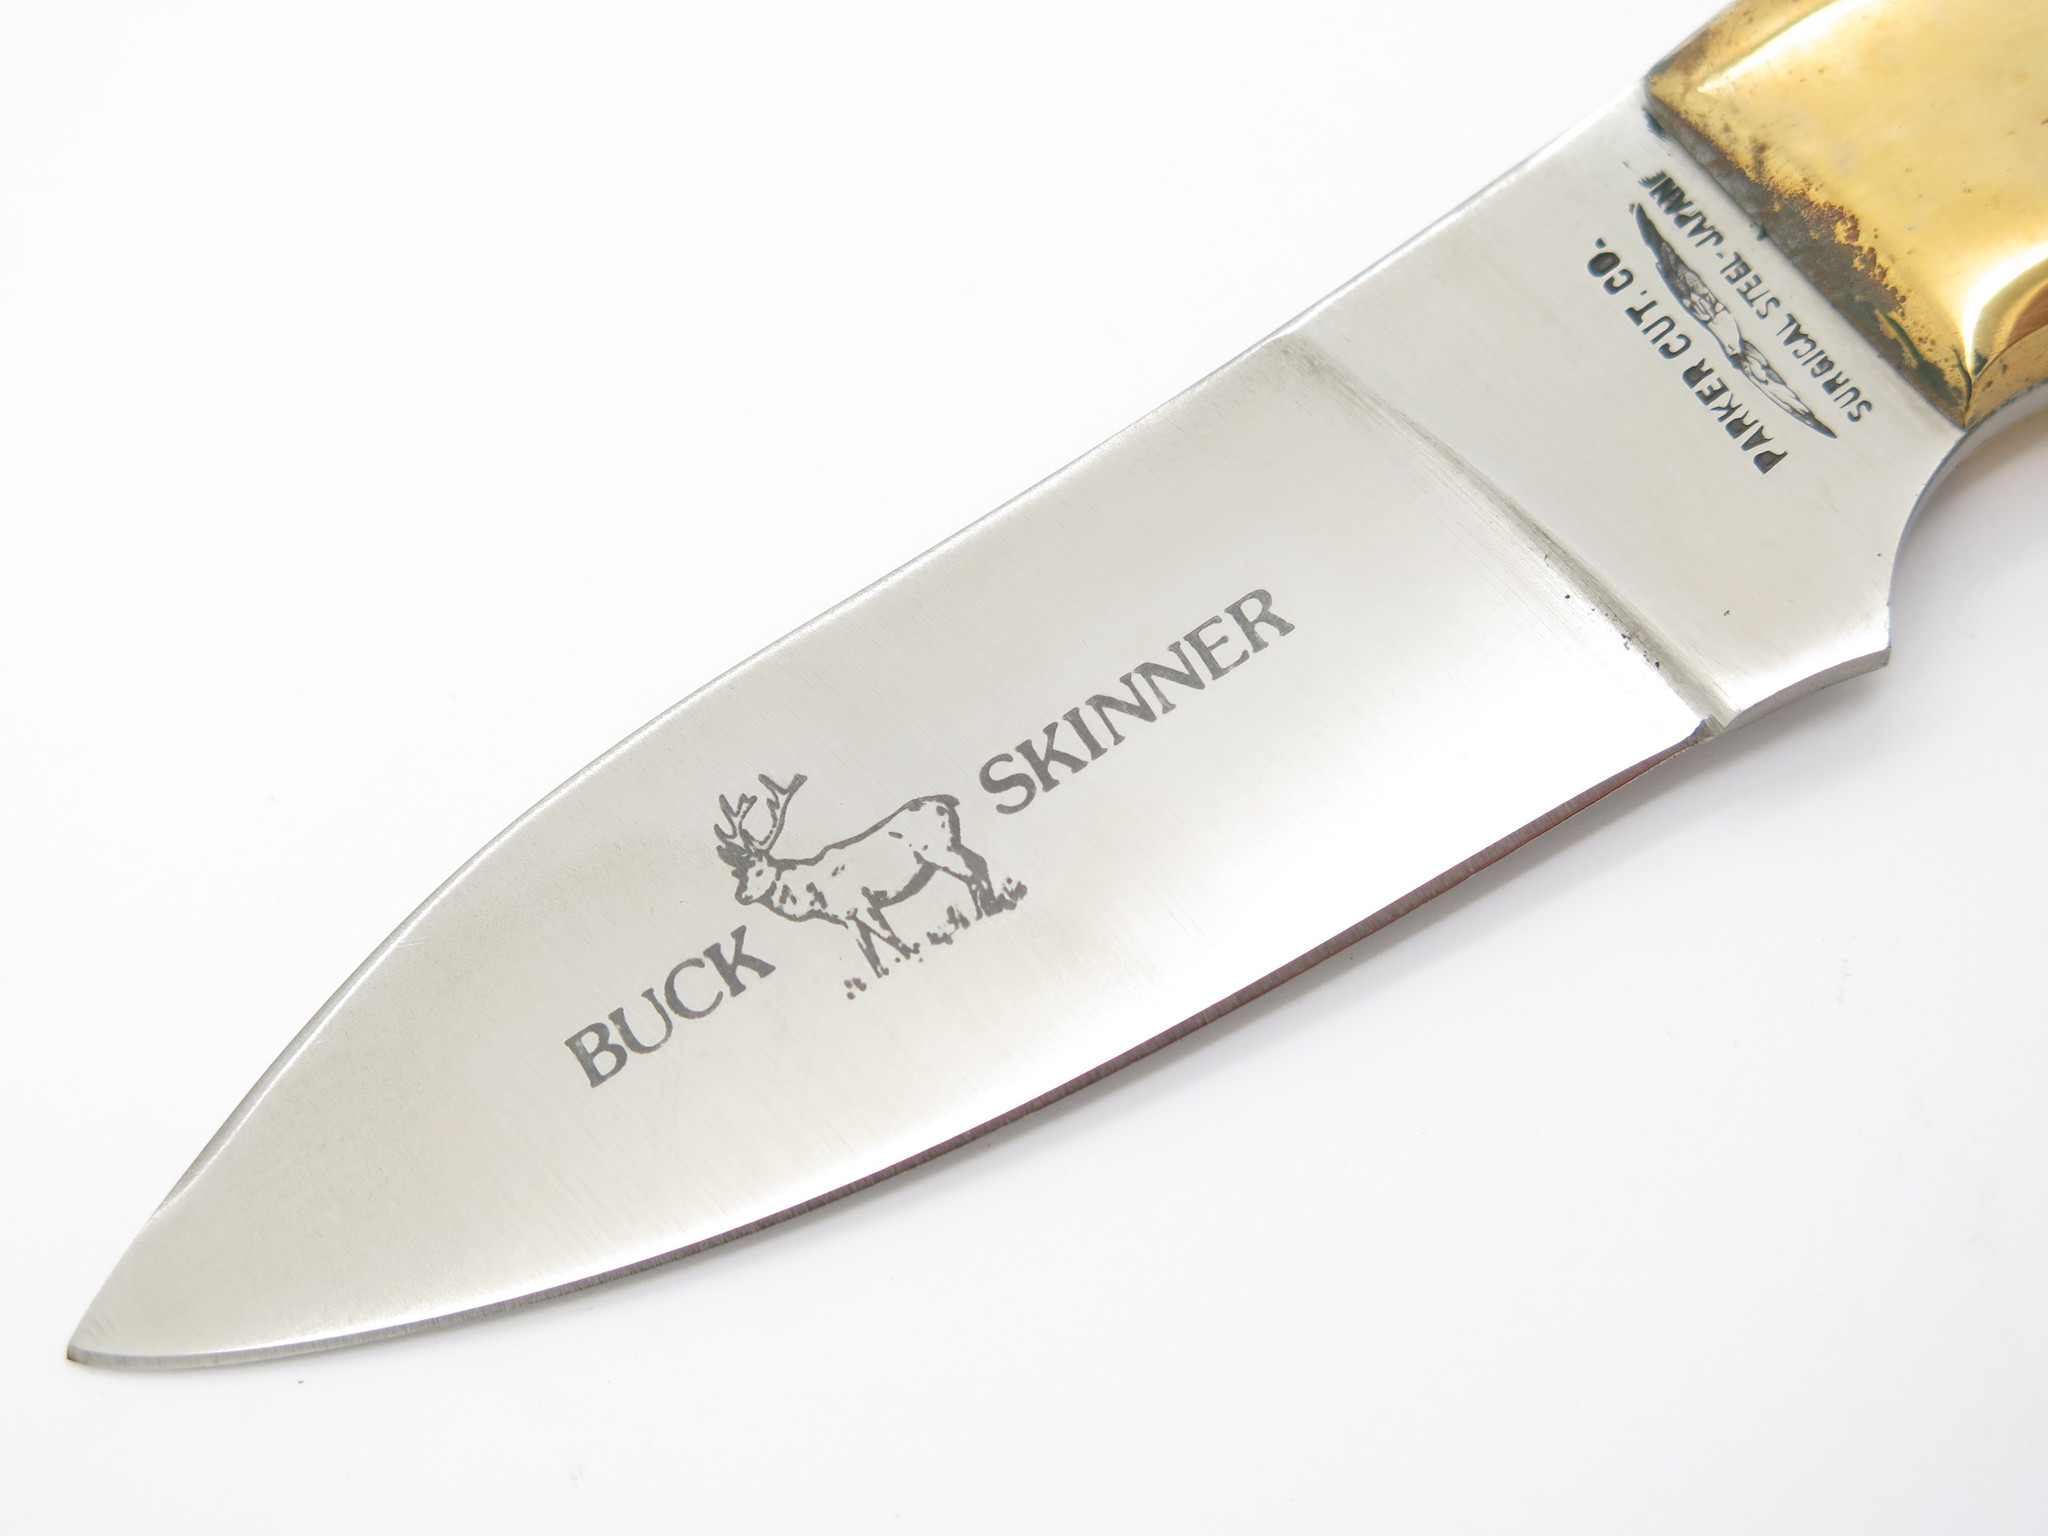 Vtg 1980s Parker Cut Co Tak Fukuta Seki Japan Skinner Fixed Blade 